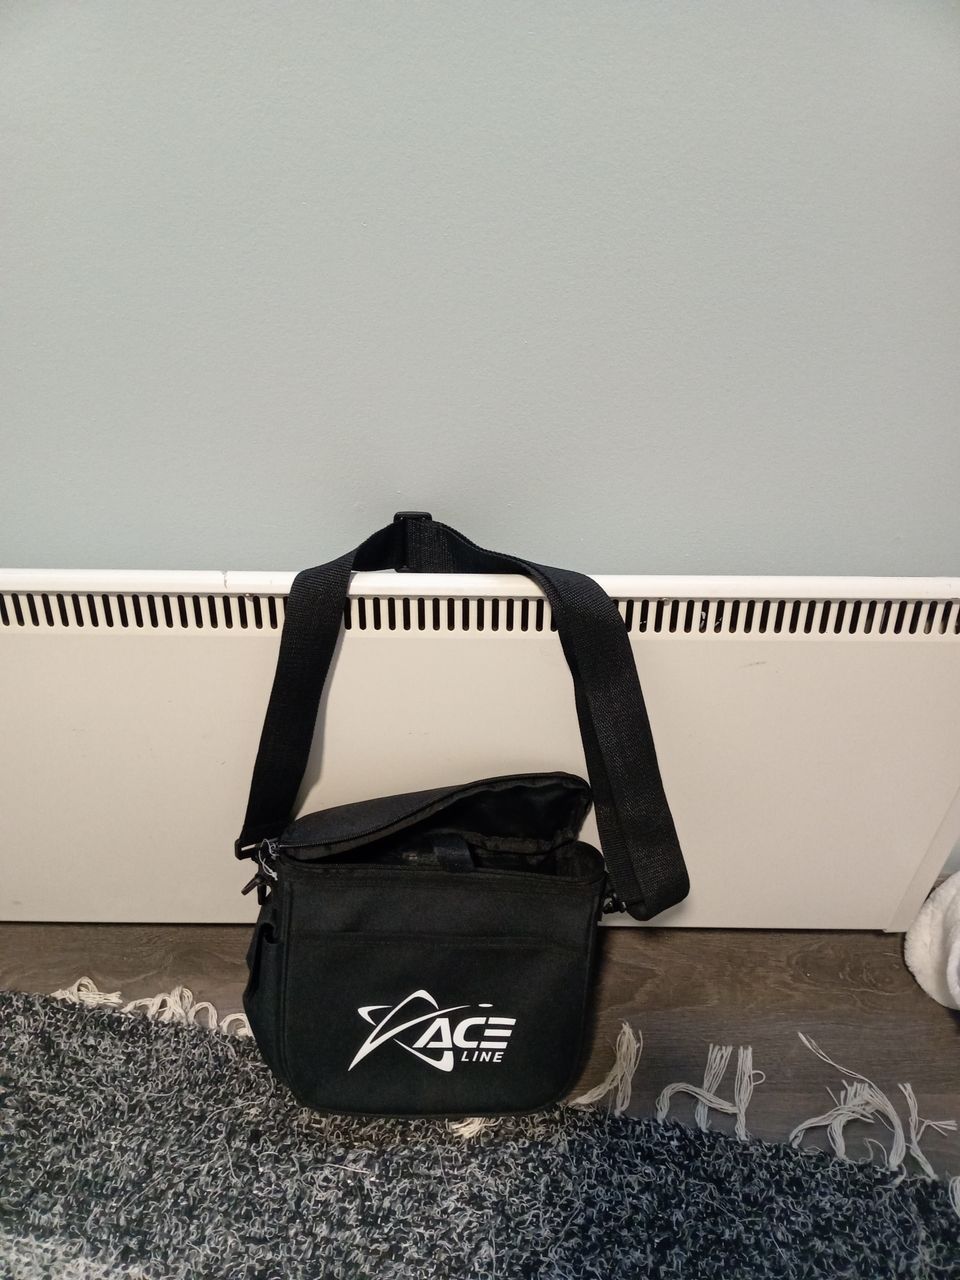 Prodigy Ace Starter bag